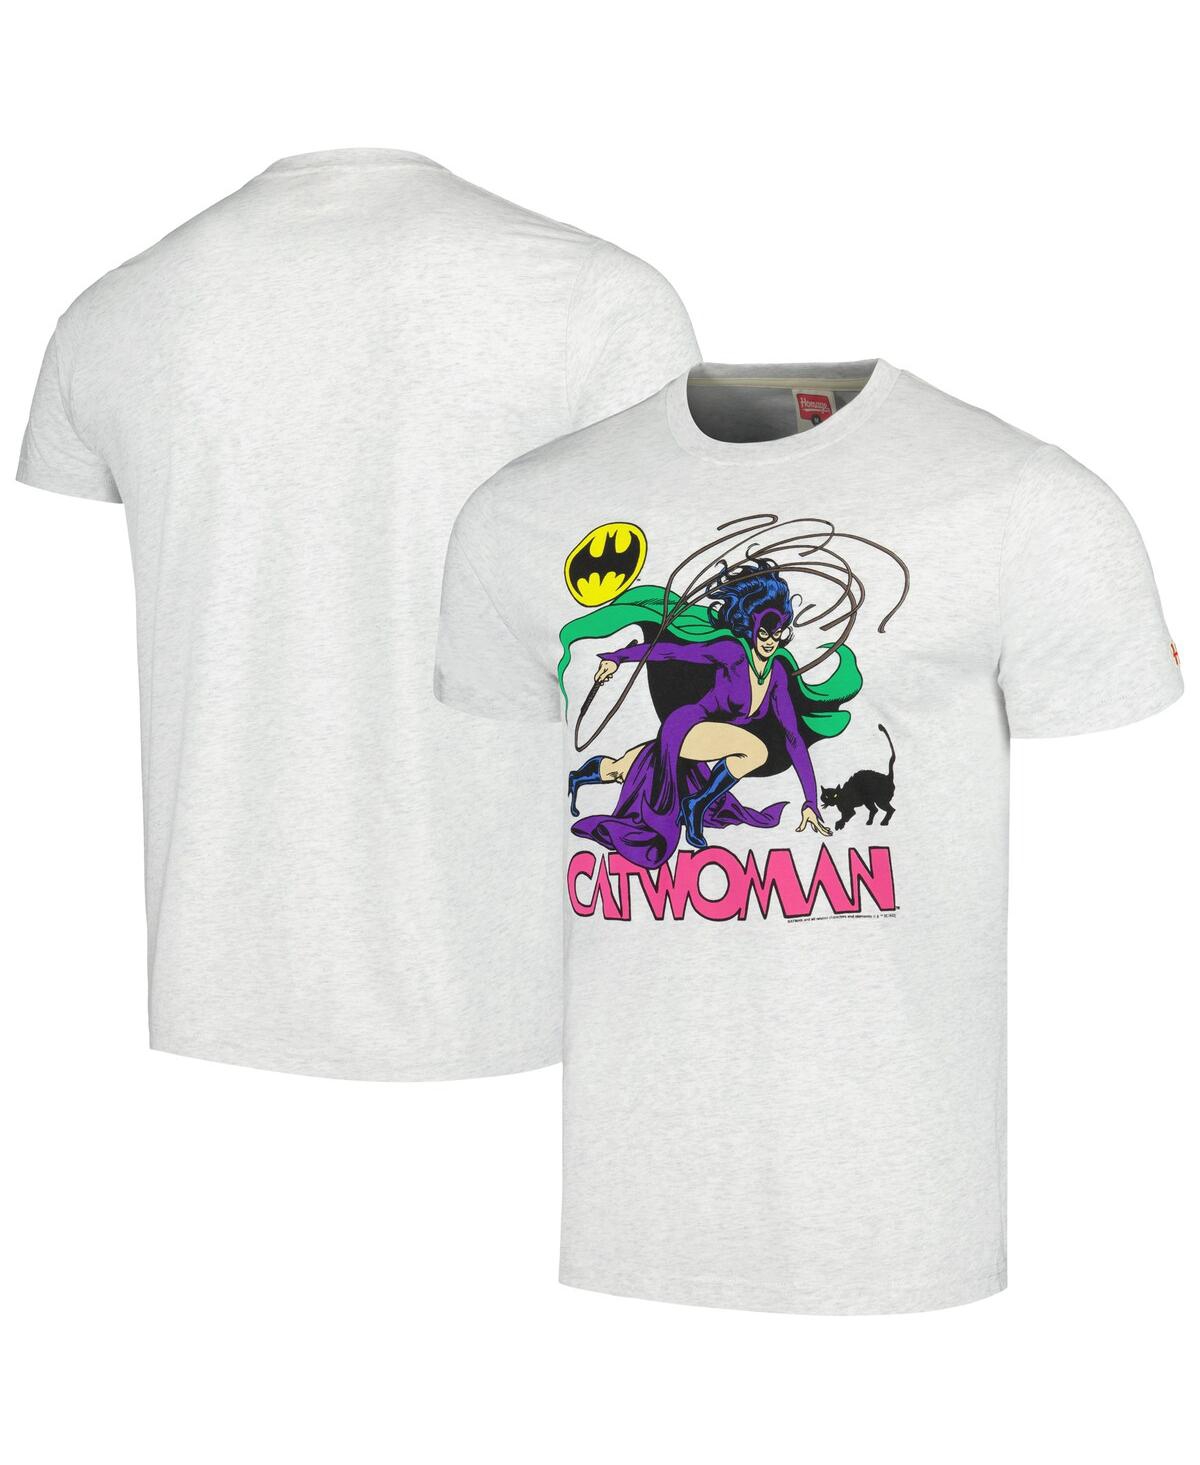 Men's Homage Ash Catwoman Tri-Blend T-shirt - Ash